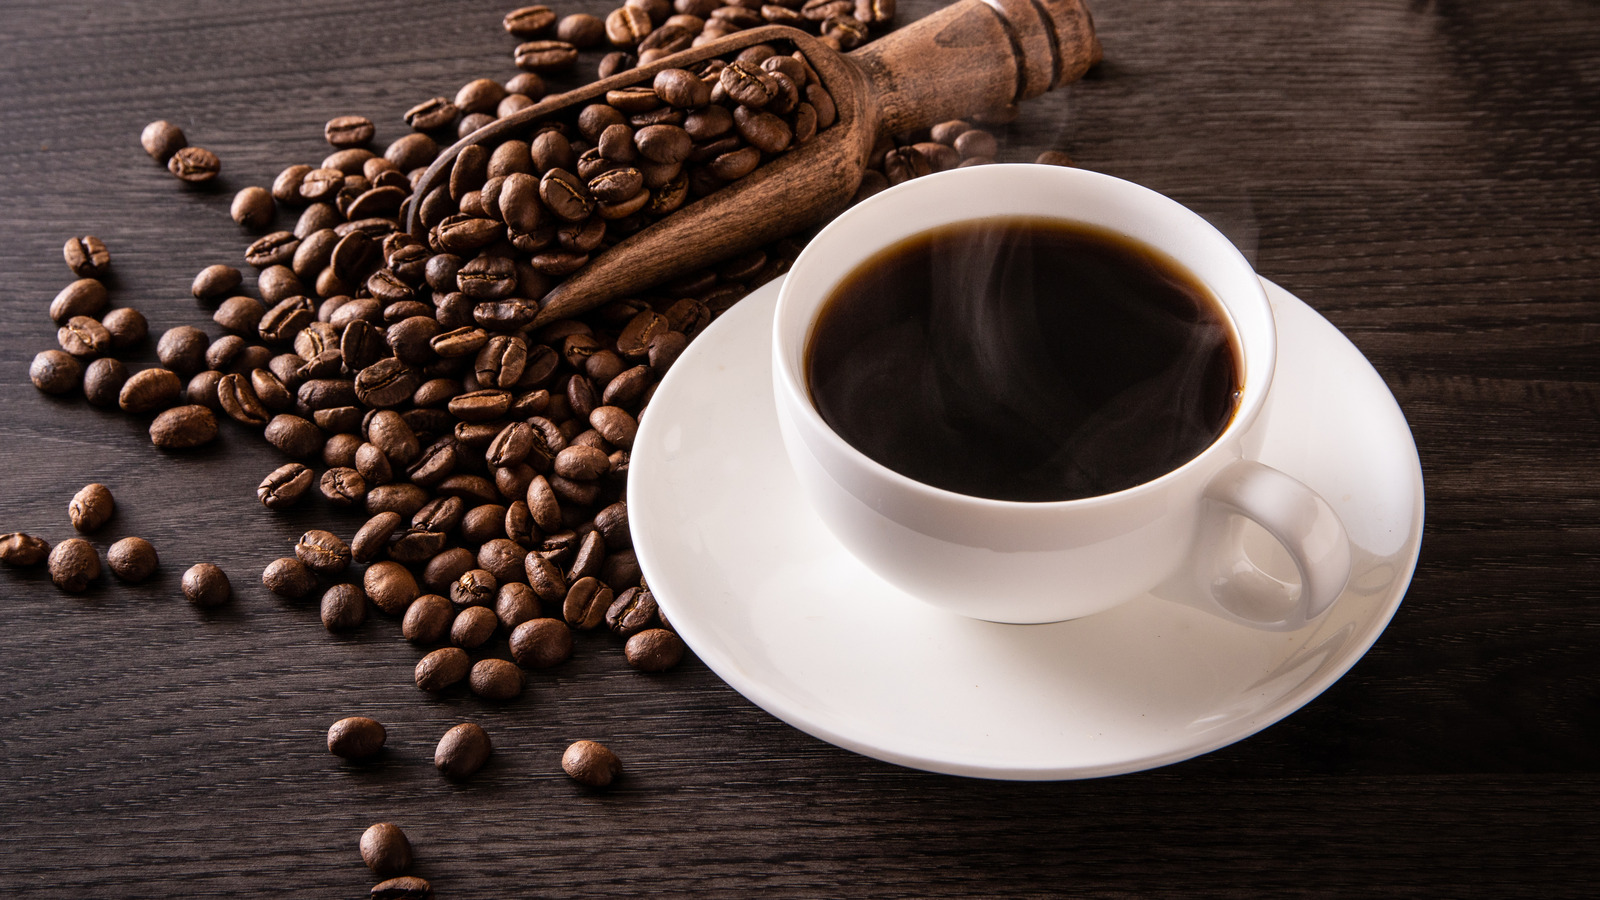 Dịch vụ vận chuyển cà phê đi Nhật Bản giá rẻ, an toàn, nhanh chóng và vô cùng uy tín